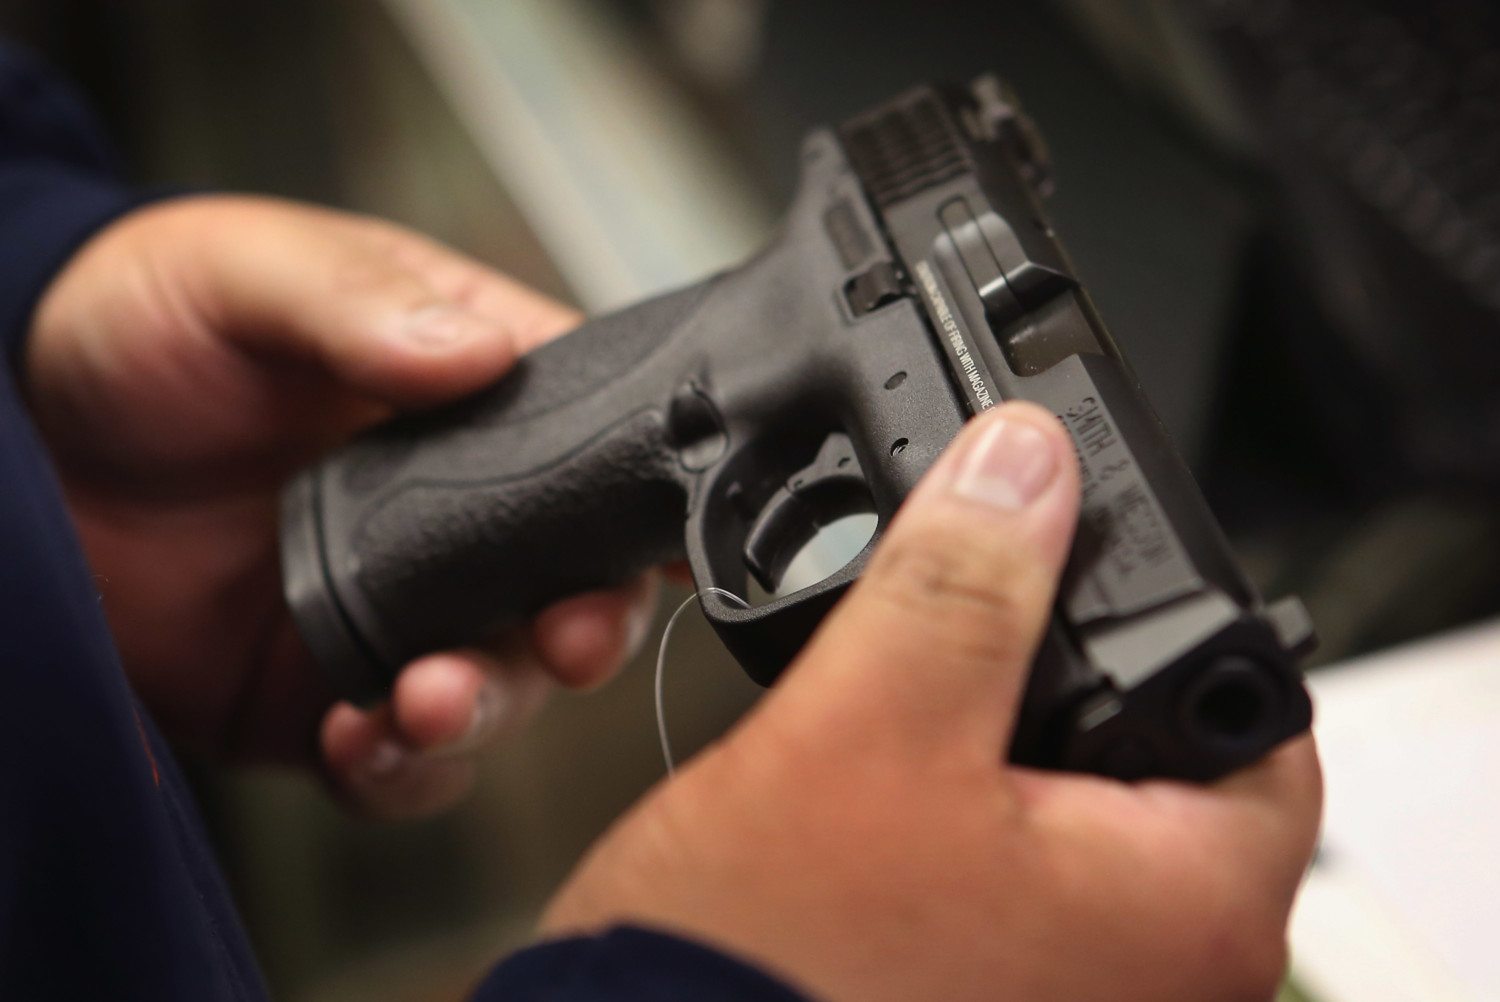 U.S. Gun Sales Reach Record Levels In 2012